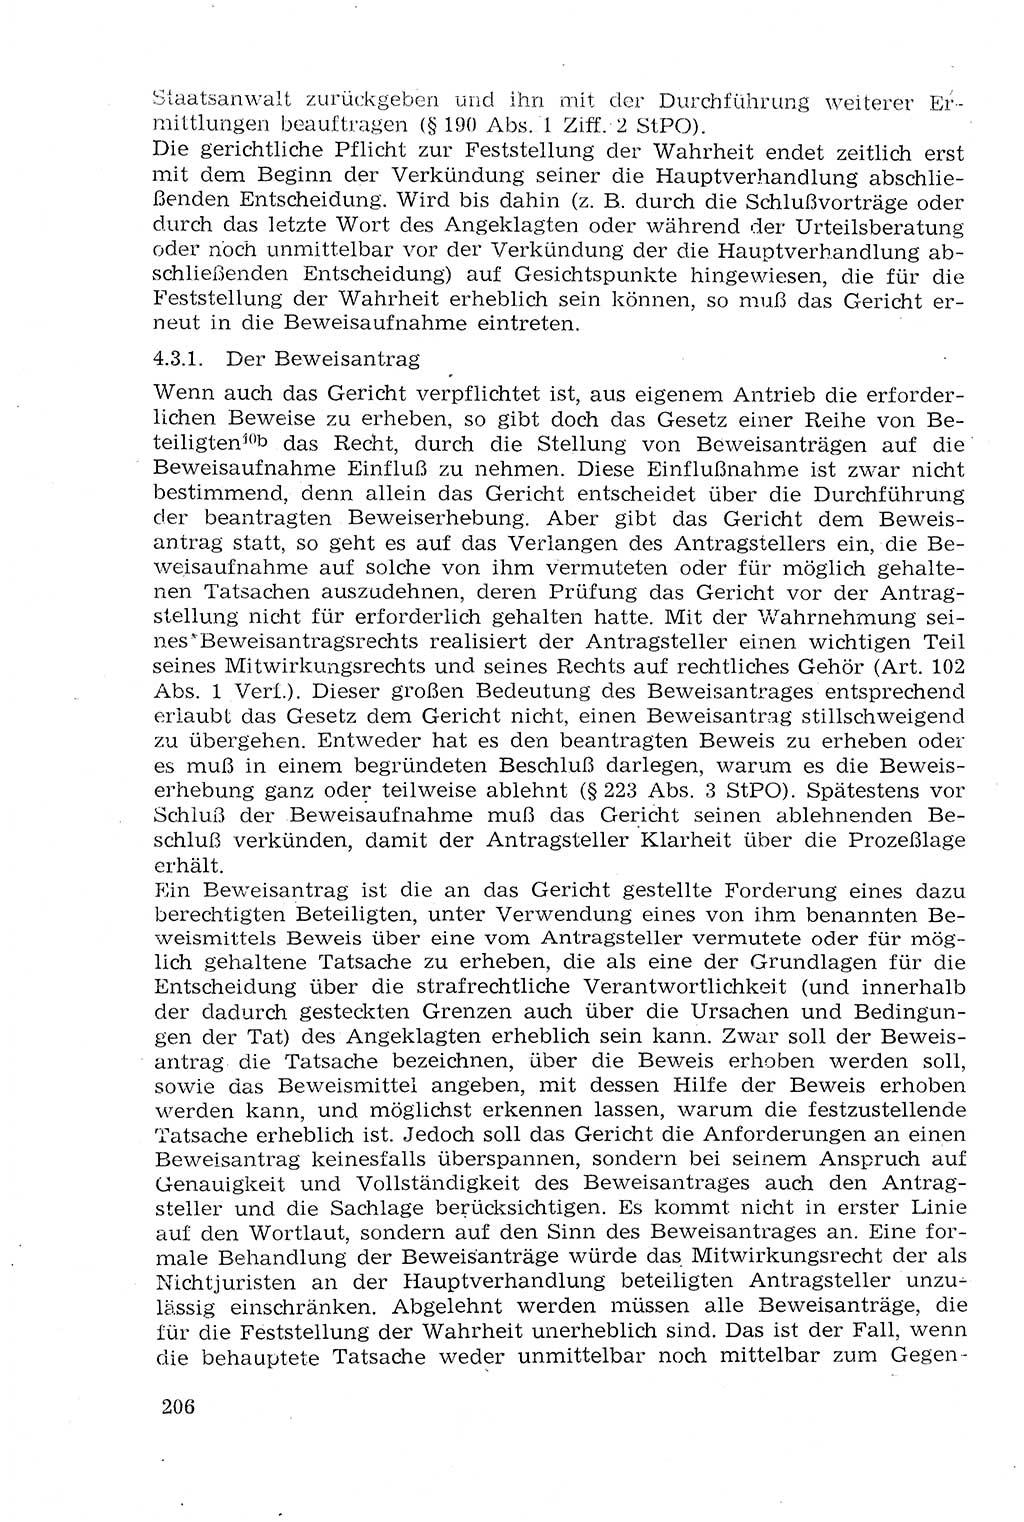 Strafprozeßrecht der DDR (Deutsche Demokratische Republik), Lehrmaterial 1969, Seite 206 (Strafprozeßr. DDR Lehrmat. 1969, S. 206)